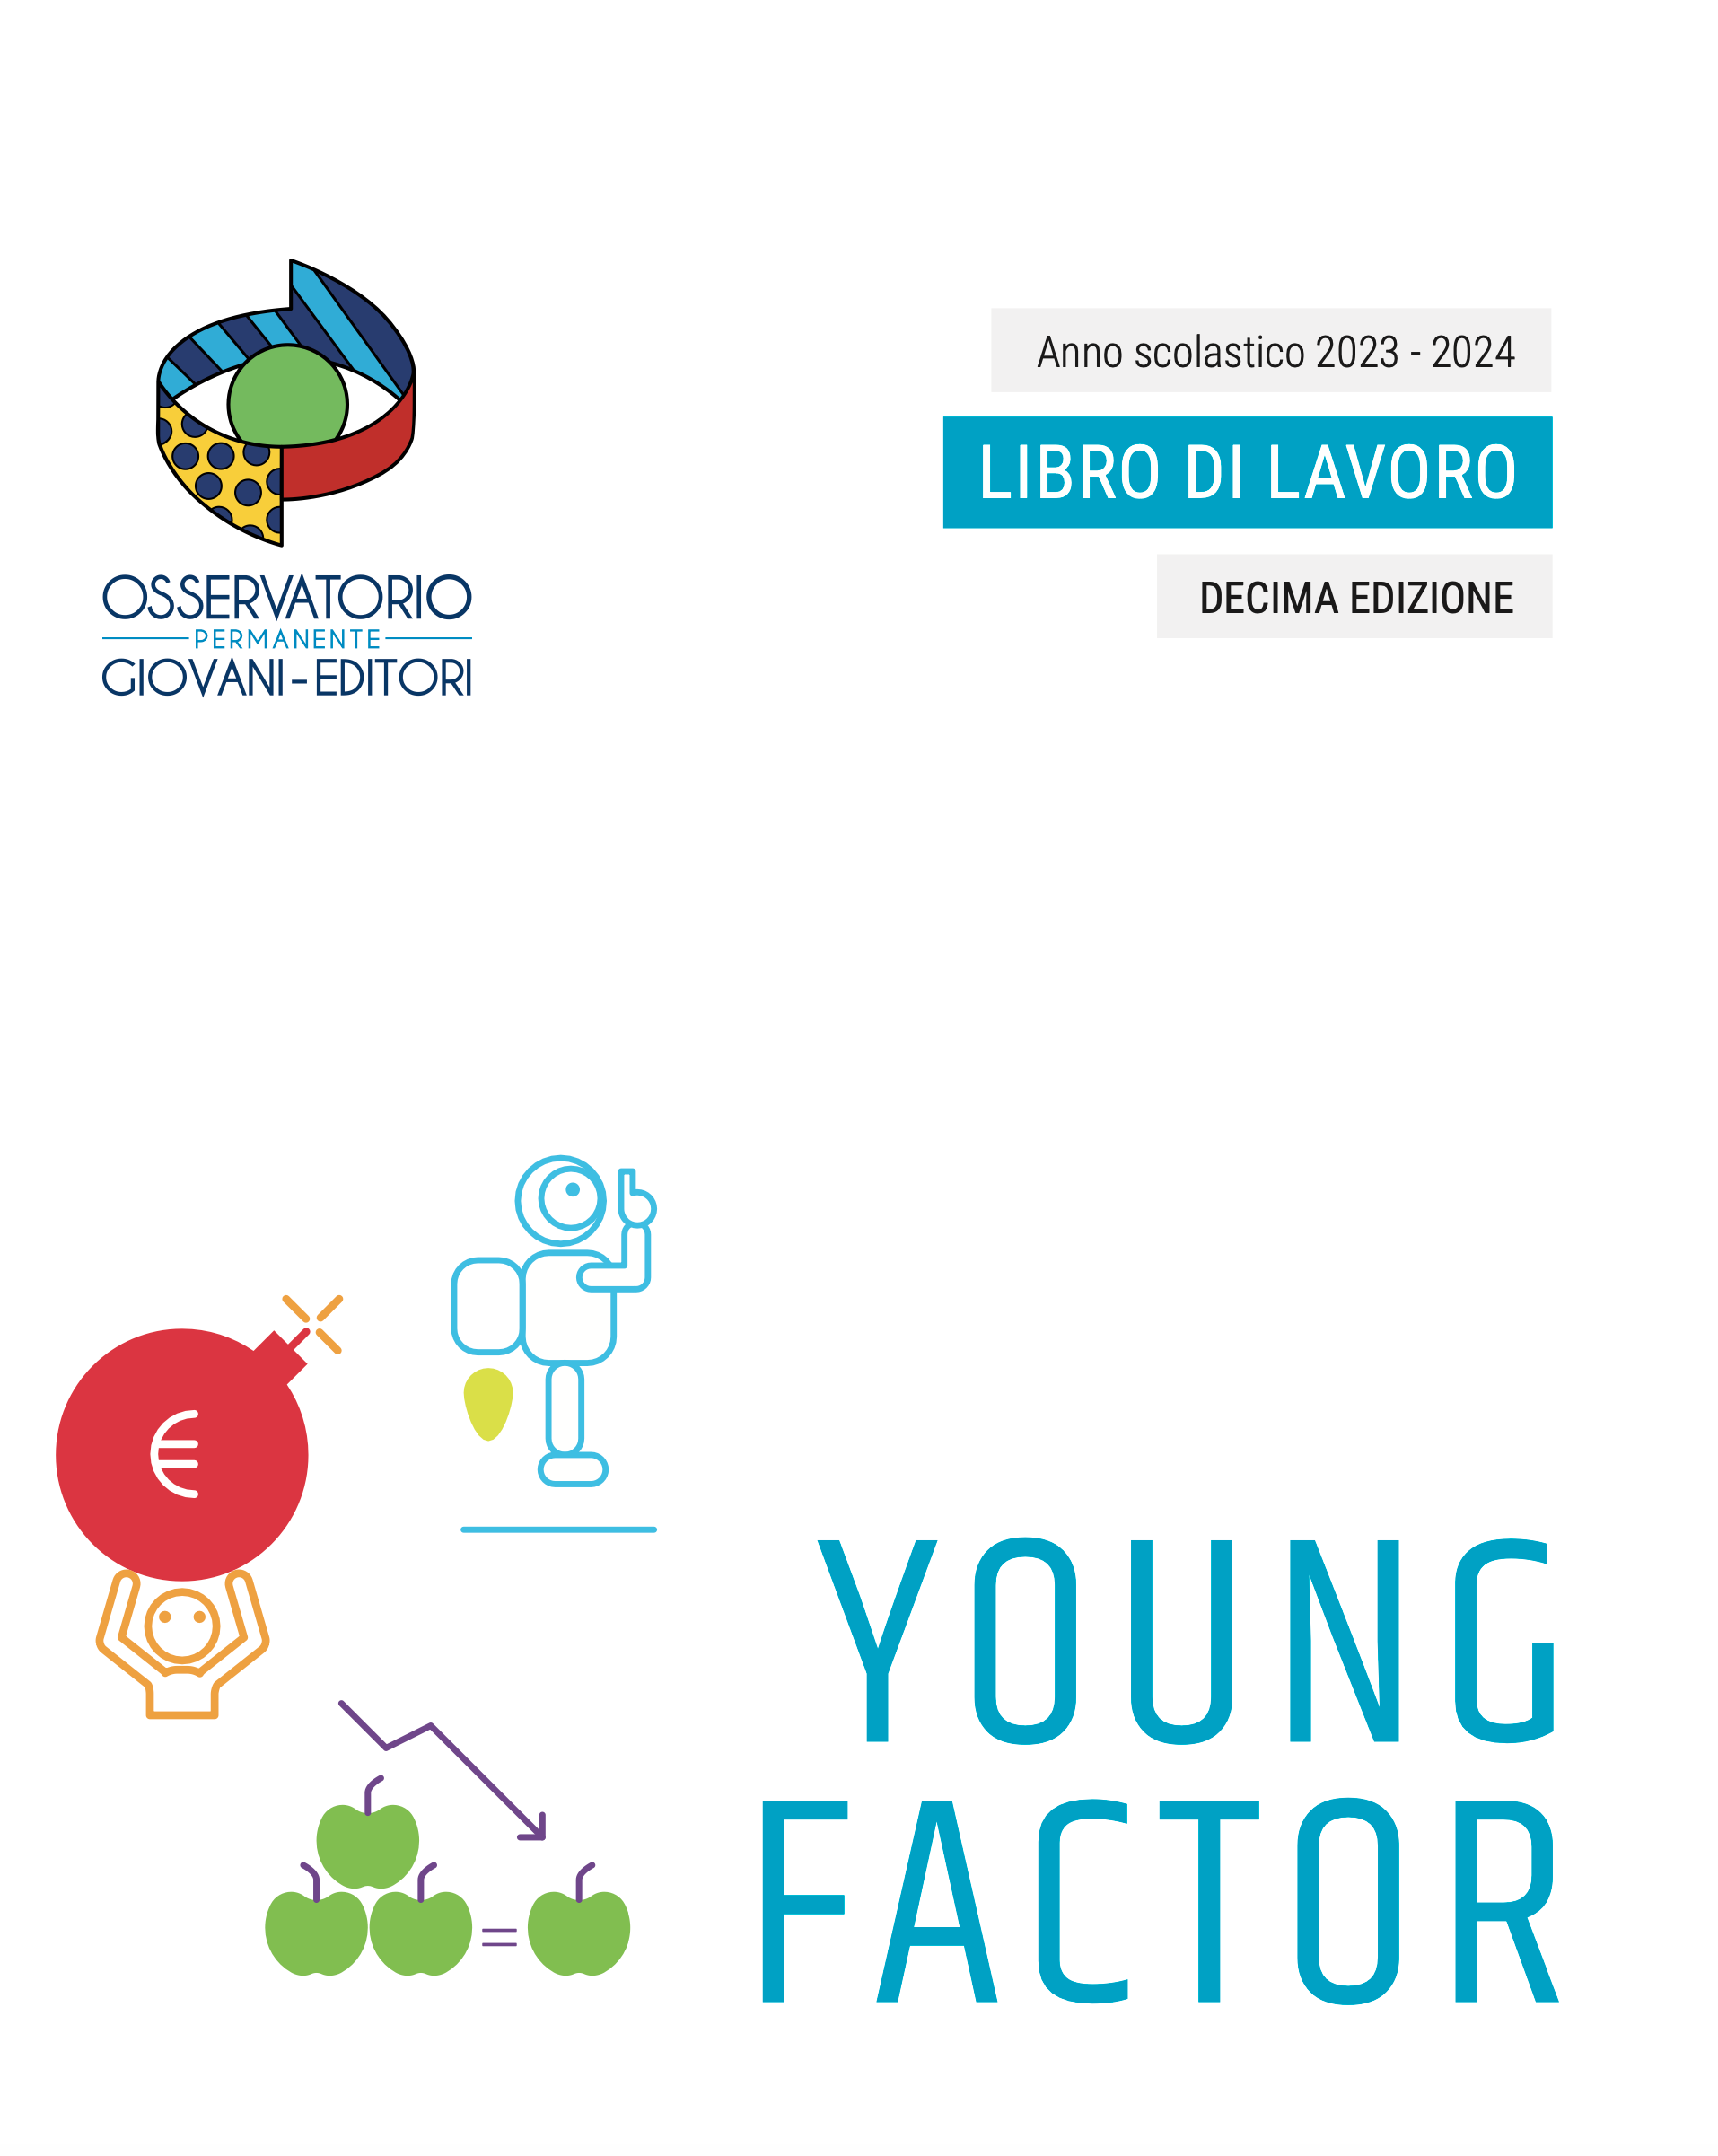 Young Factor - Libro di lavoro 2023/2024